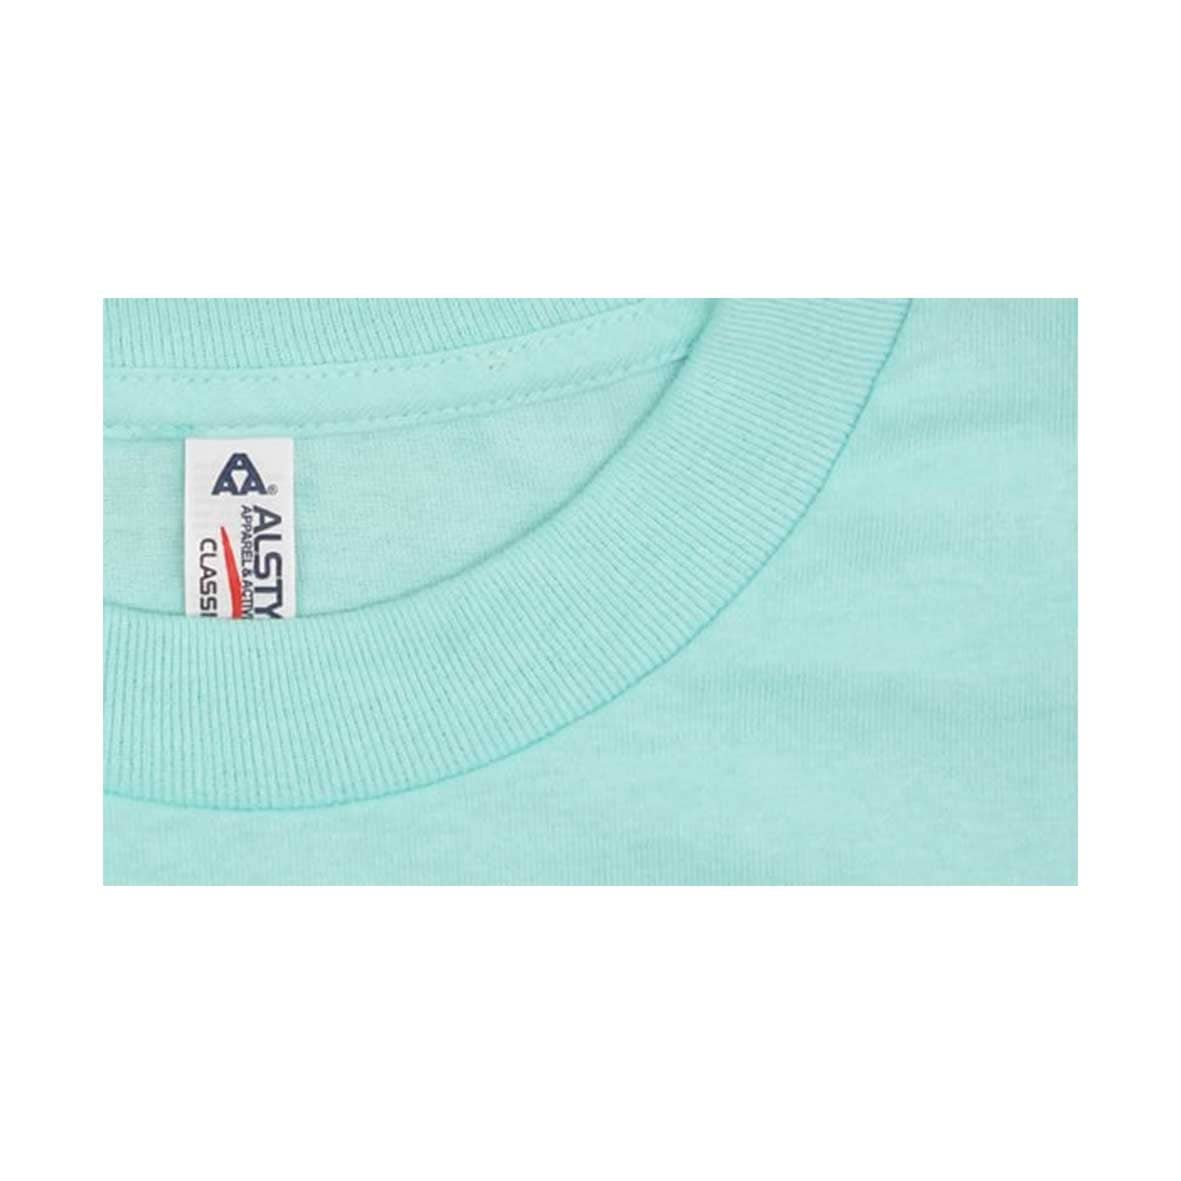 ALSTYLE (AAA) アルスタイル 6.0 oz 半袖 クラシック Tシャツ (品番1301)